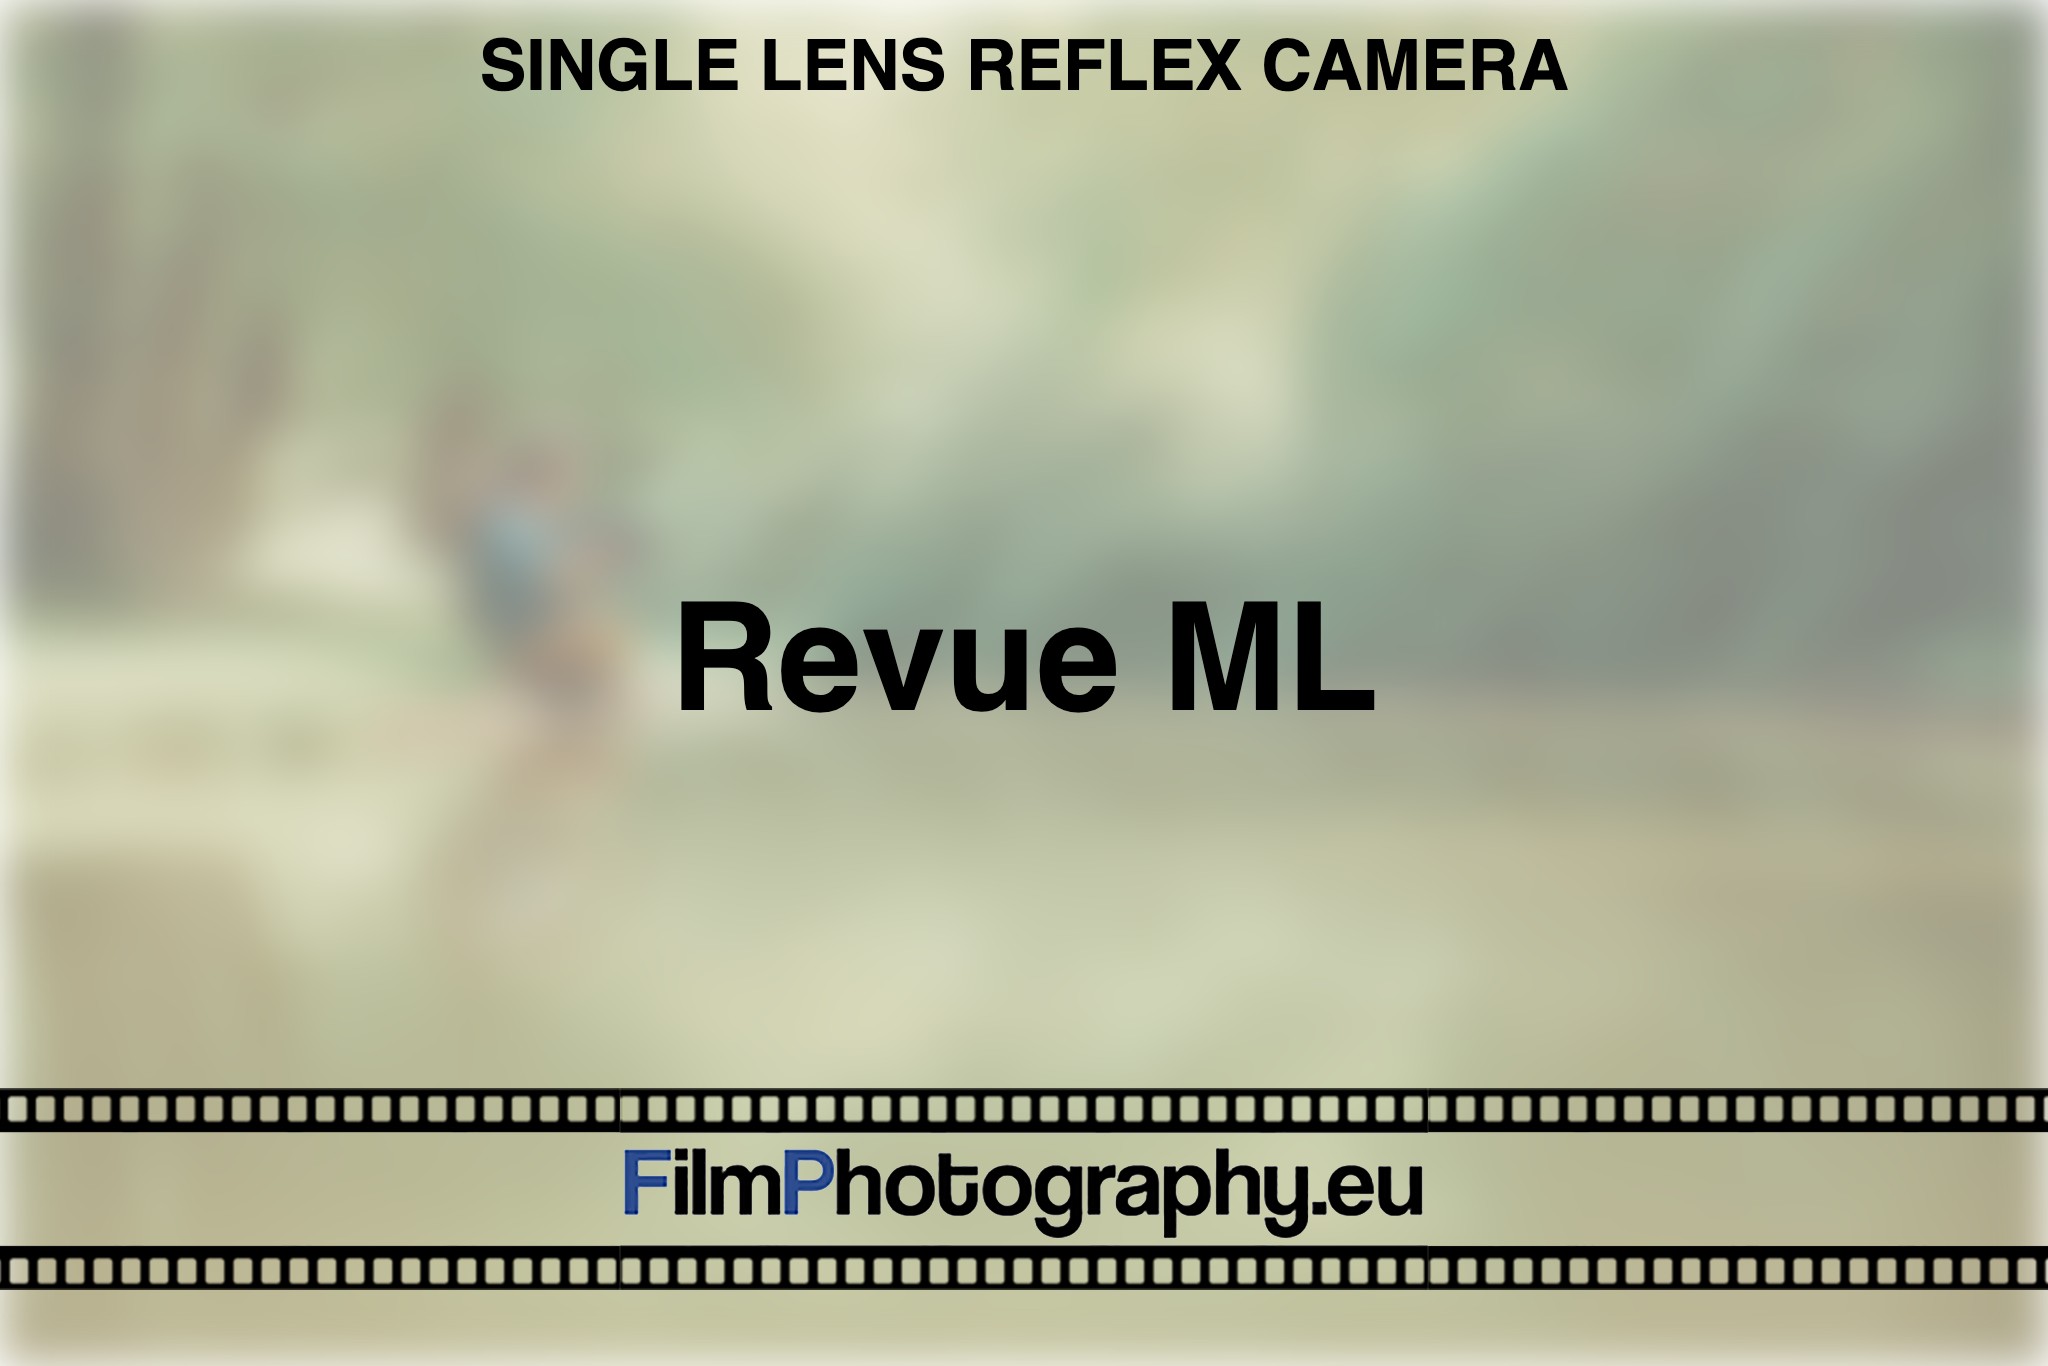 revue-ml-single-lens-reflex-camera-bnv